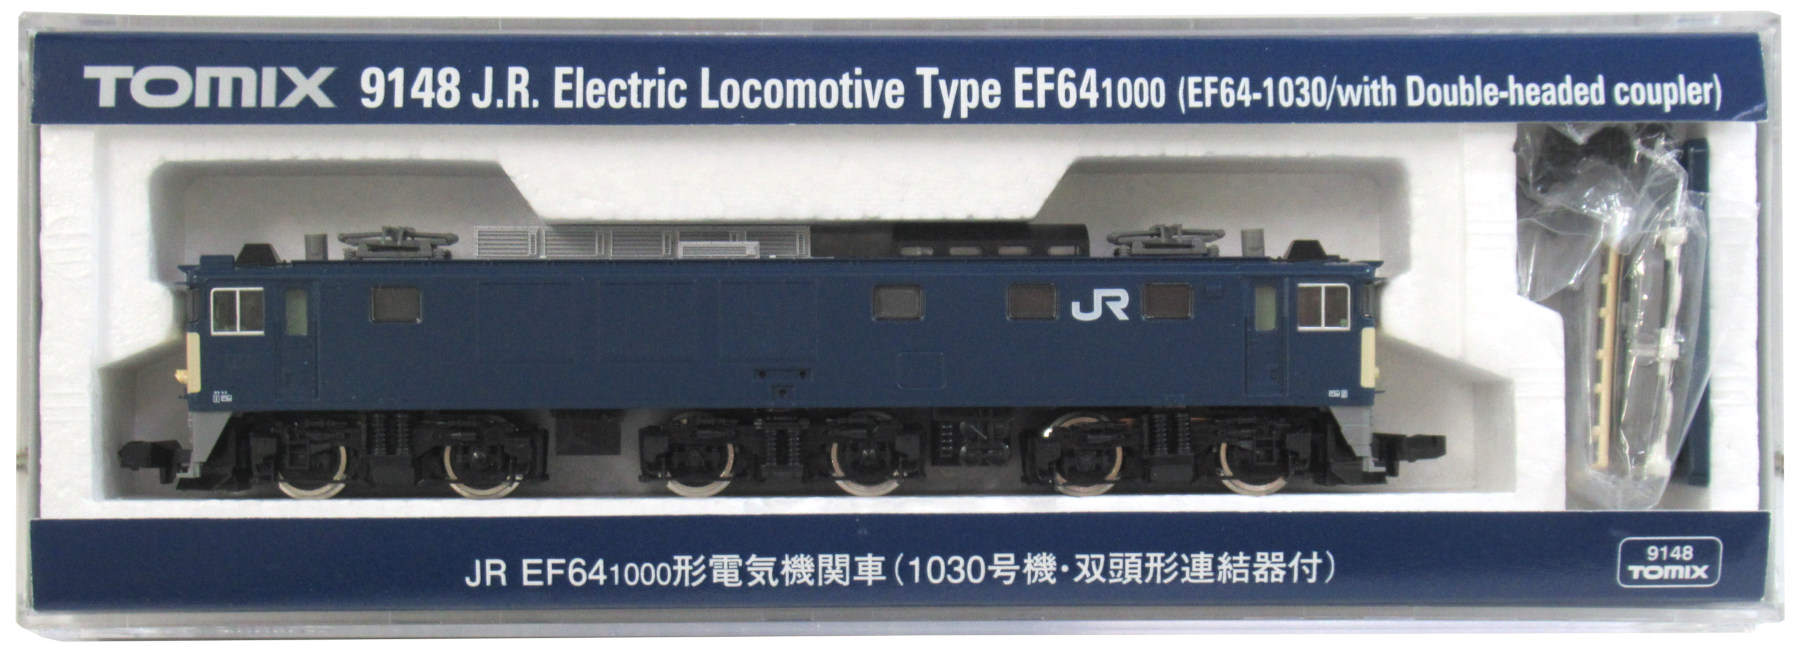 大人気新品 TOMIX 9148 JR EF64 1000形電気機関車(1030号双頭連絡器 